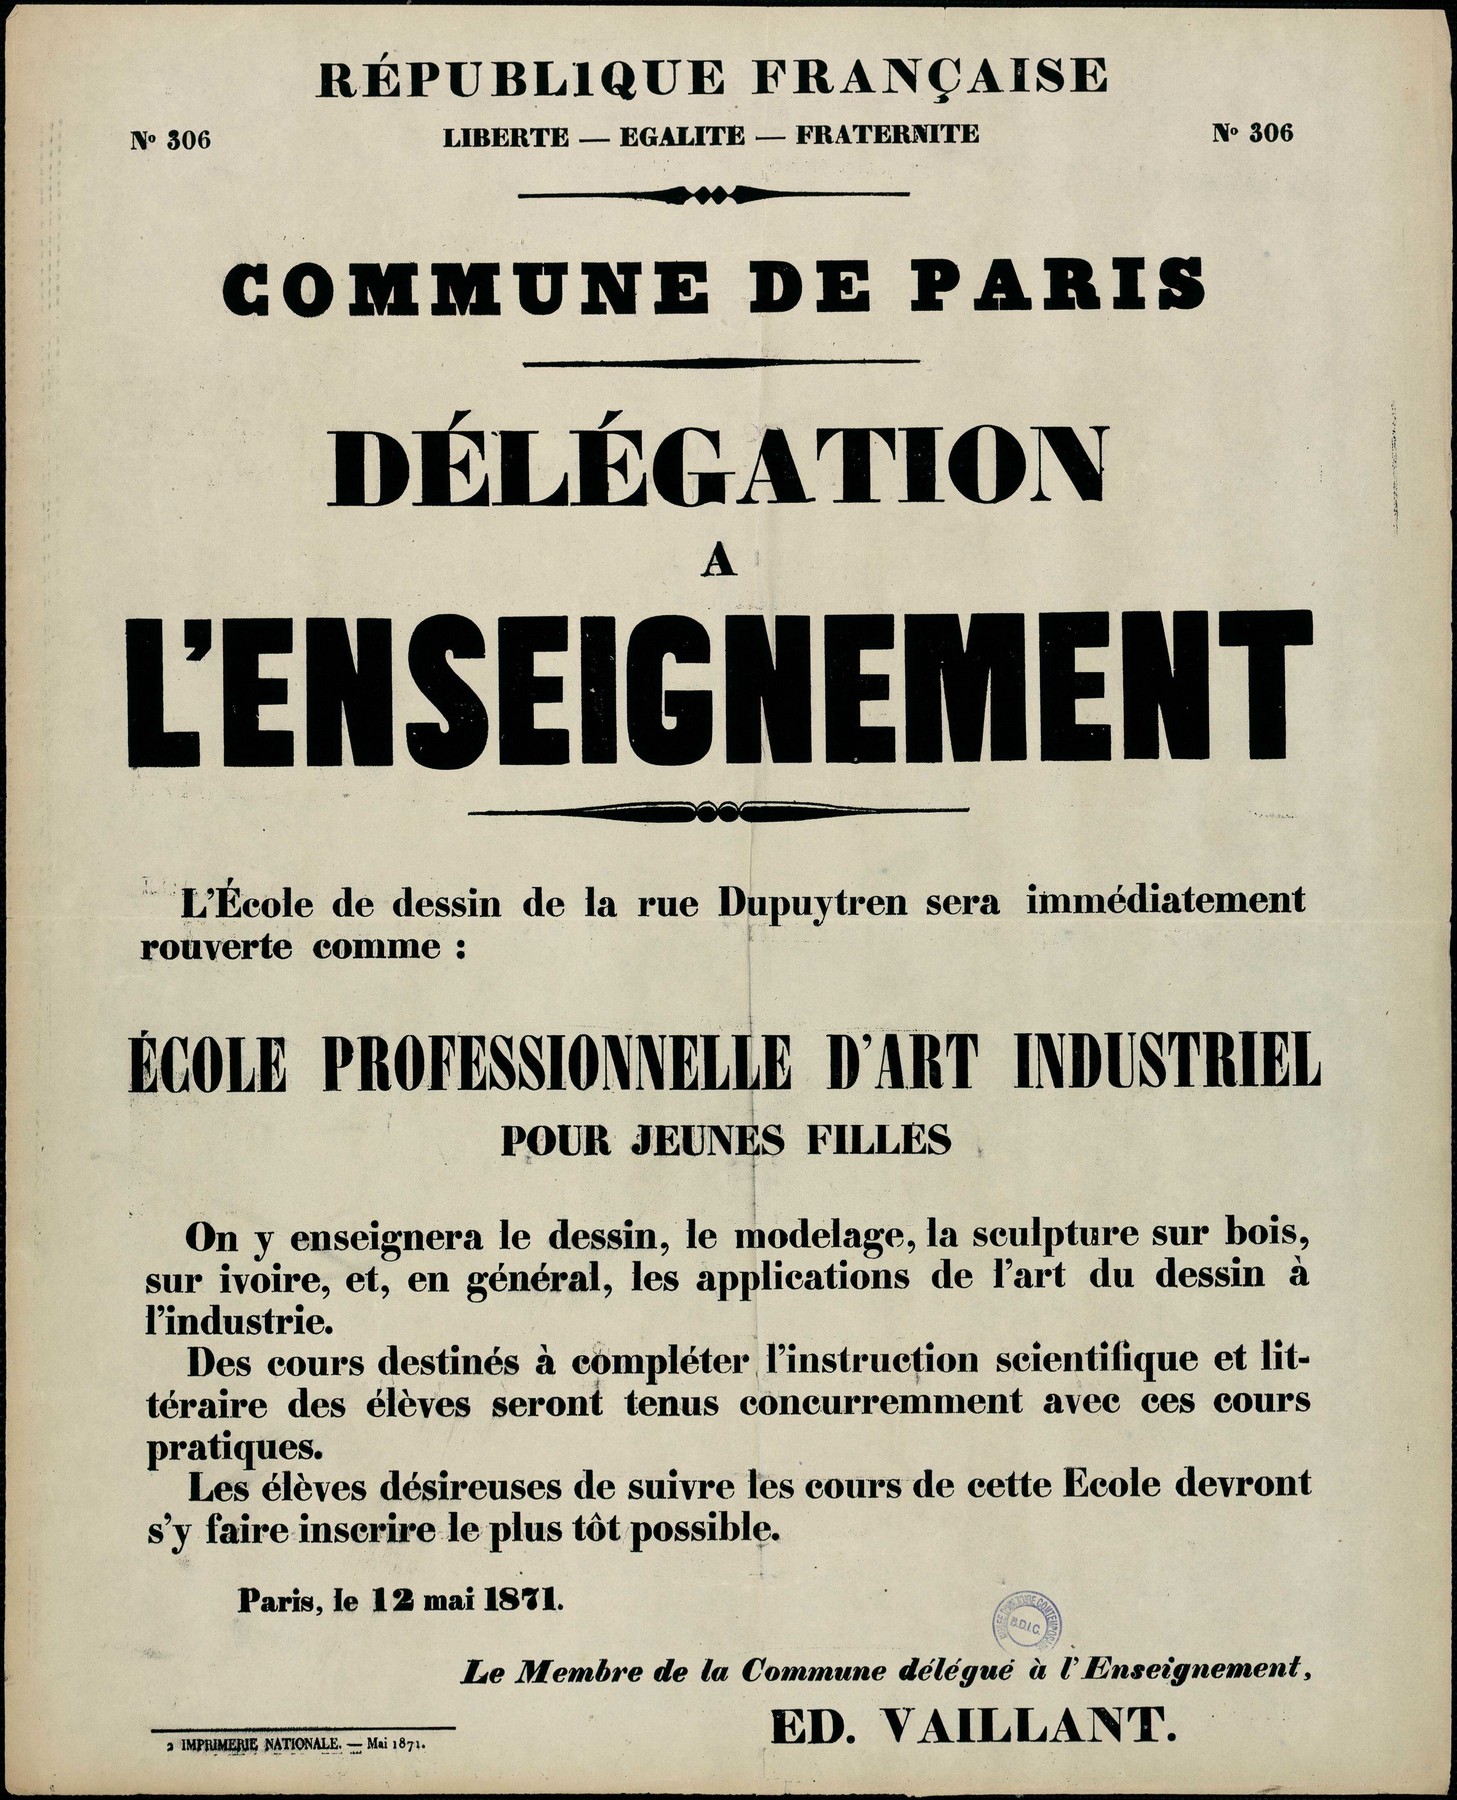 Affiche de la Commune de Paris N° 306 du 12 mai 1871 - École professionnelle d'art industriel Vaillant (Source : argonnaute.parisnanterre.fr)